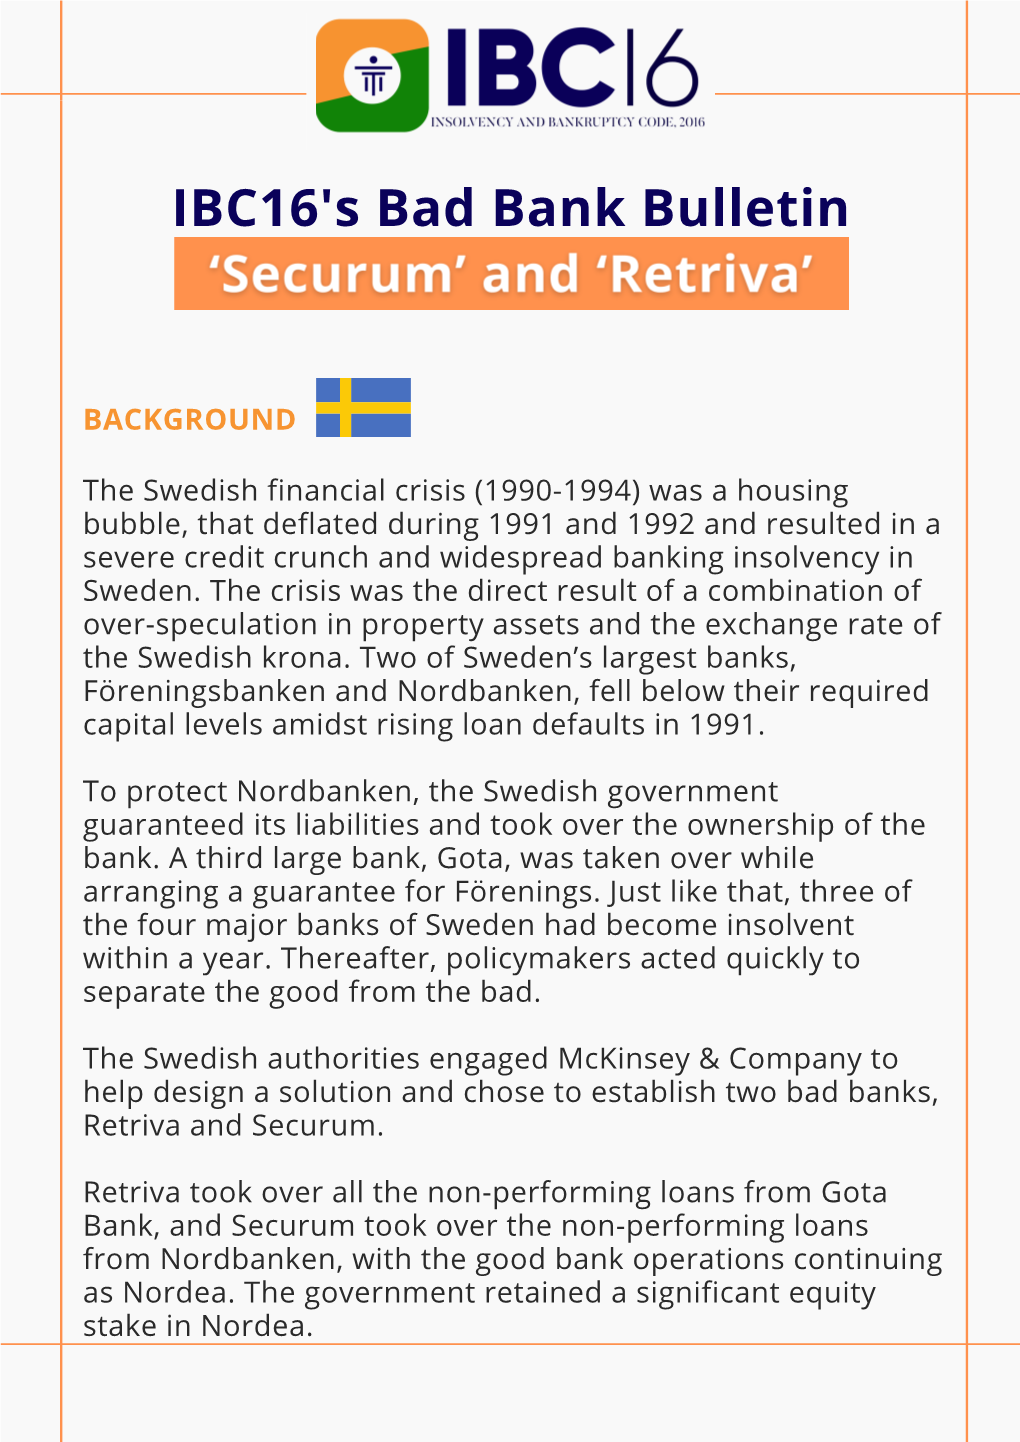 Securum and Retriva